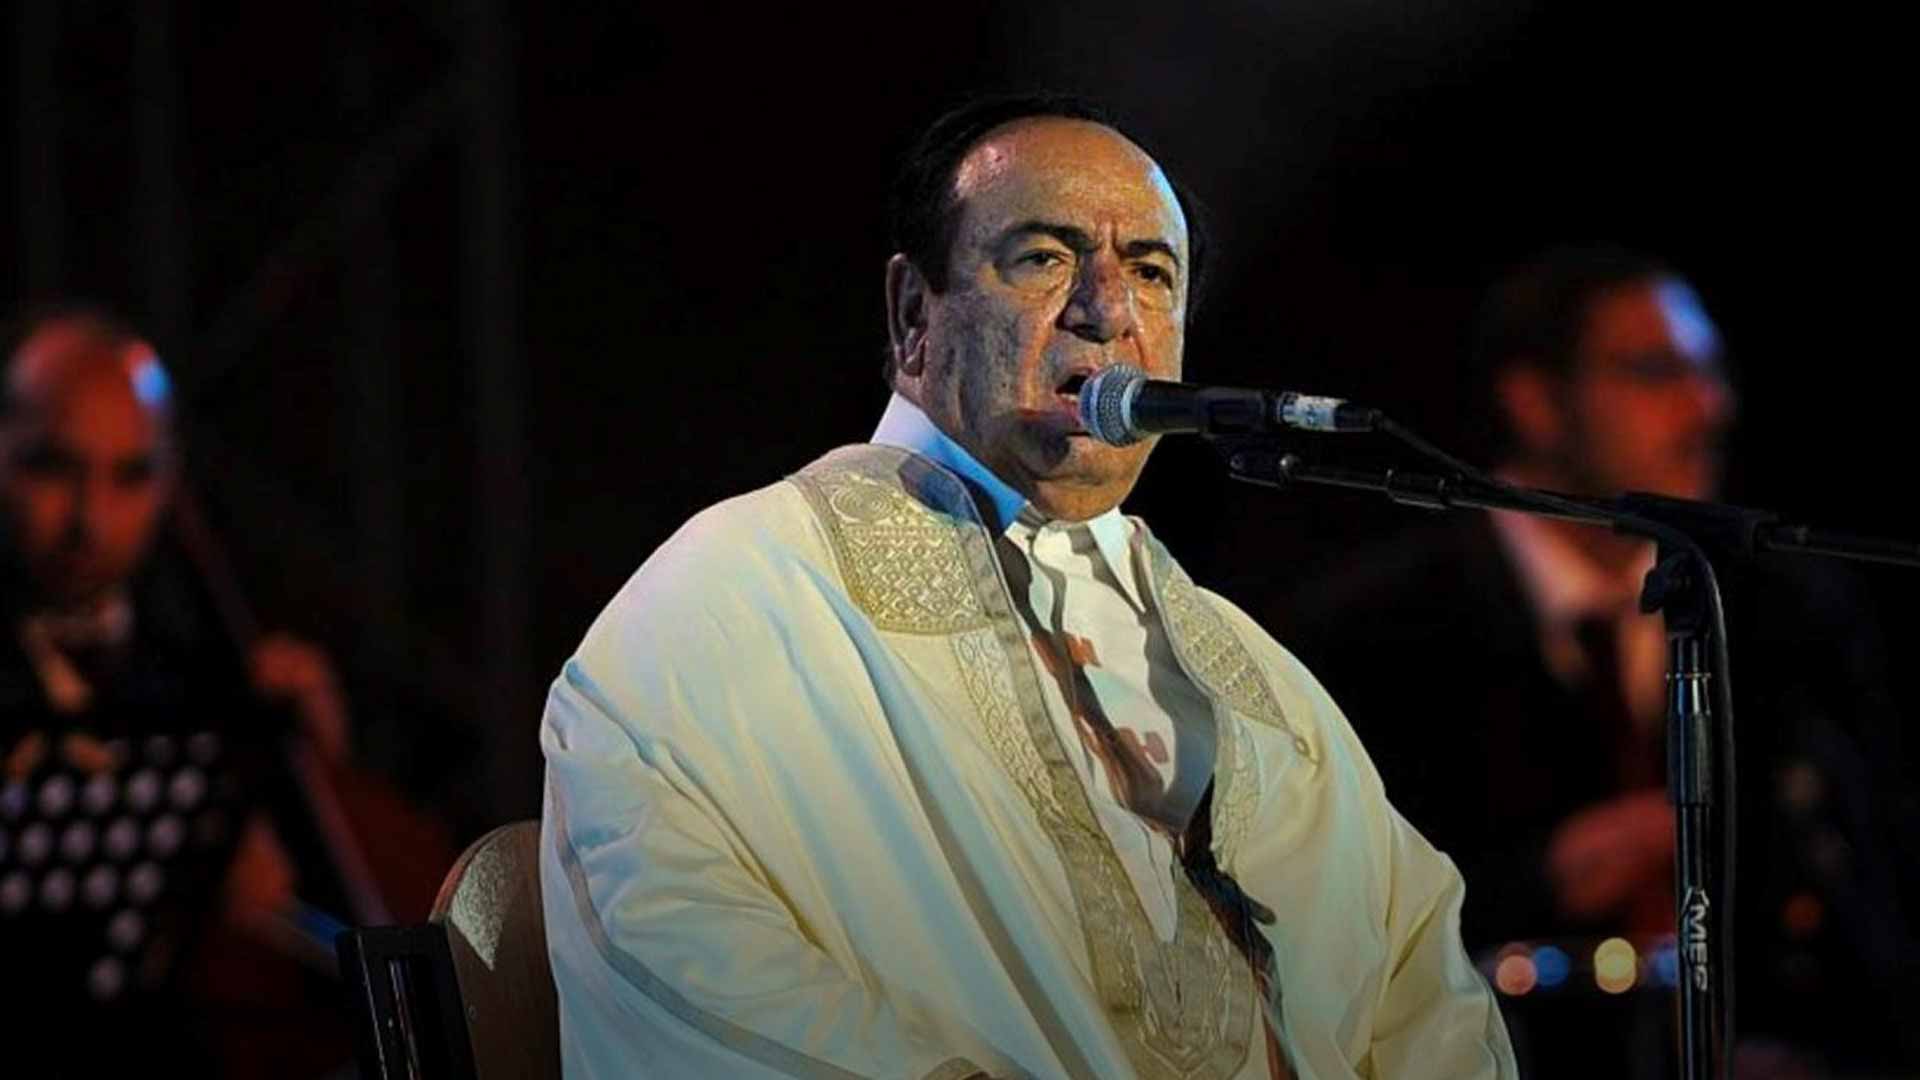 Arab world’s legendary singer, Sabah Fakhri, dies at 88